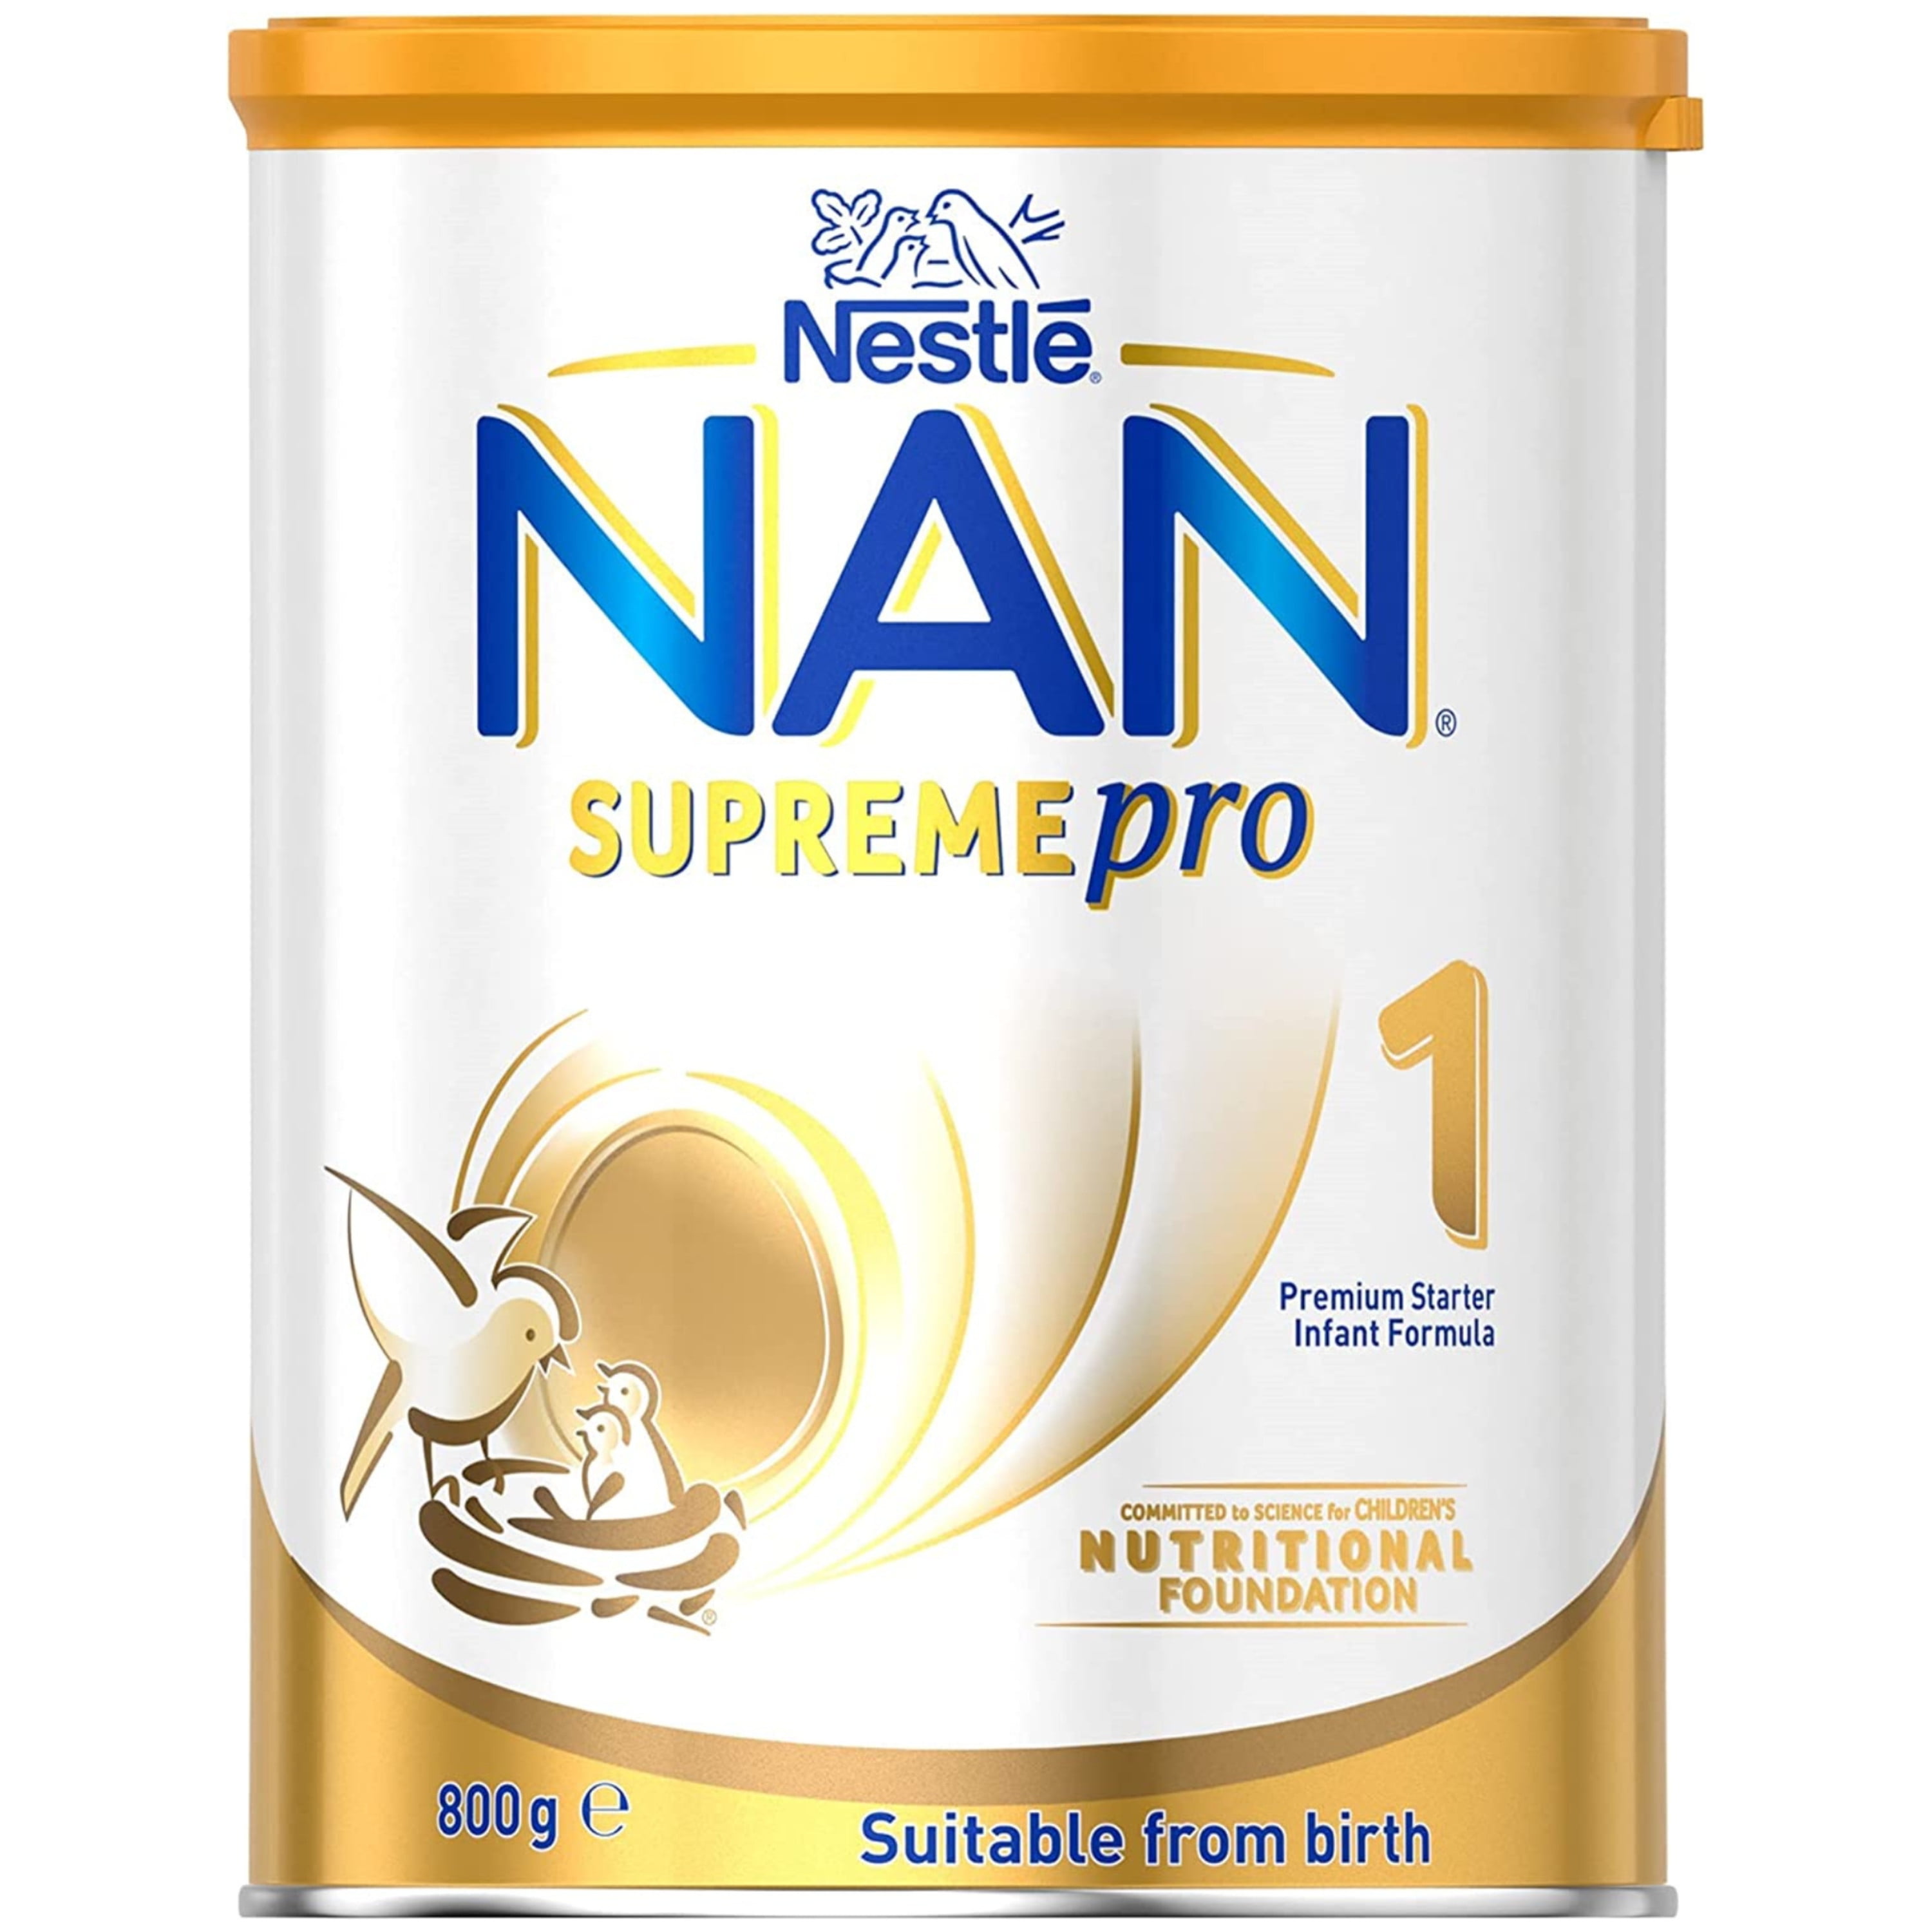 Fórmula Infantil NAN 1 Supreme Pro de 0 a 6 meses 1 lata de 800g